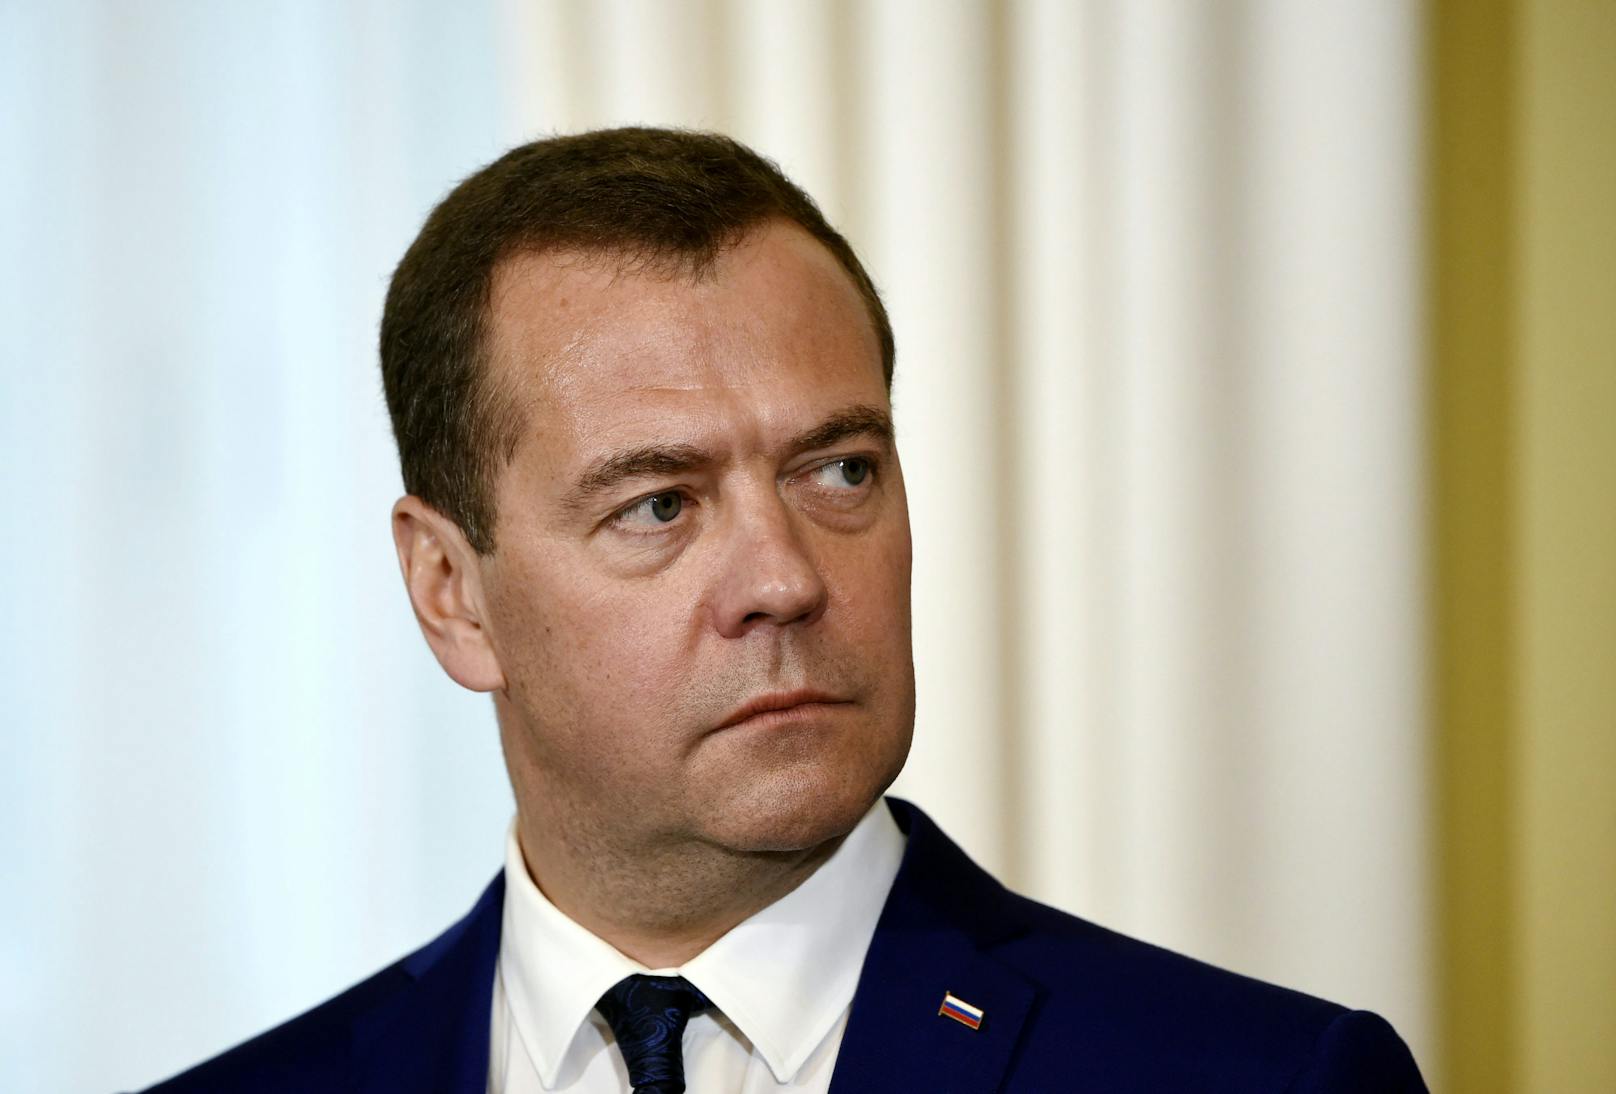 Der frühere russische Präsident Dmitri Medwedew (56) spricht öffentlich darüber, dass Russland die Todesstrafe wieder aktivieren könnte.